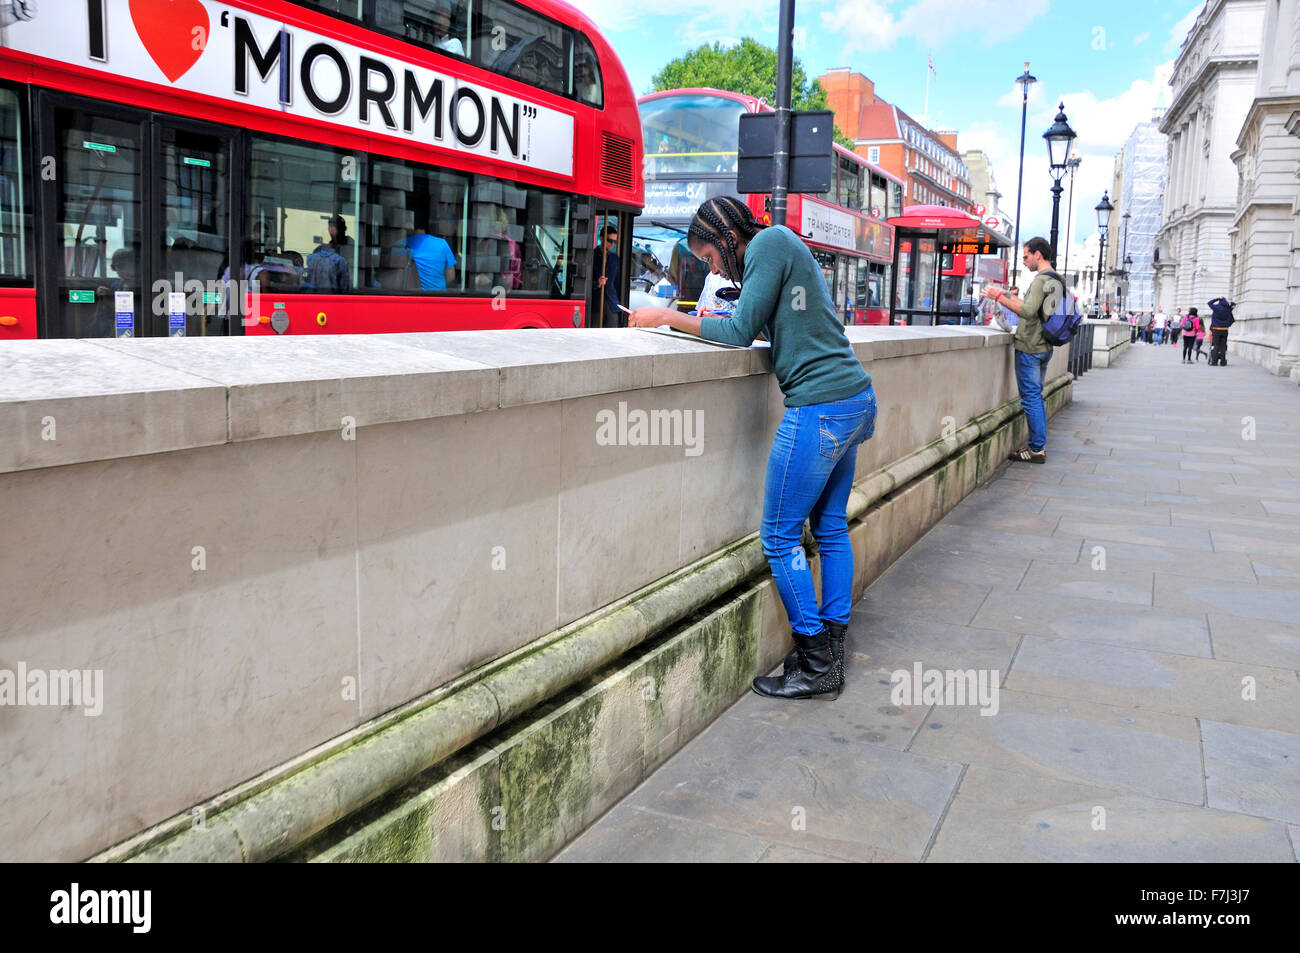 Londra, Inghilterra, Regno Unito. Giovane donna nera in Whithall guardando una mappa come un bus pubblicità 'Il Libro di Mormon' visualizza le unità passato Foto Stock